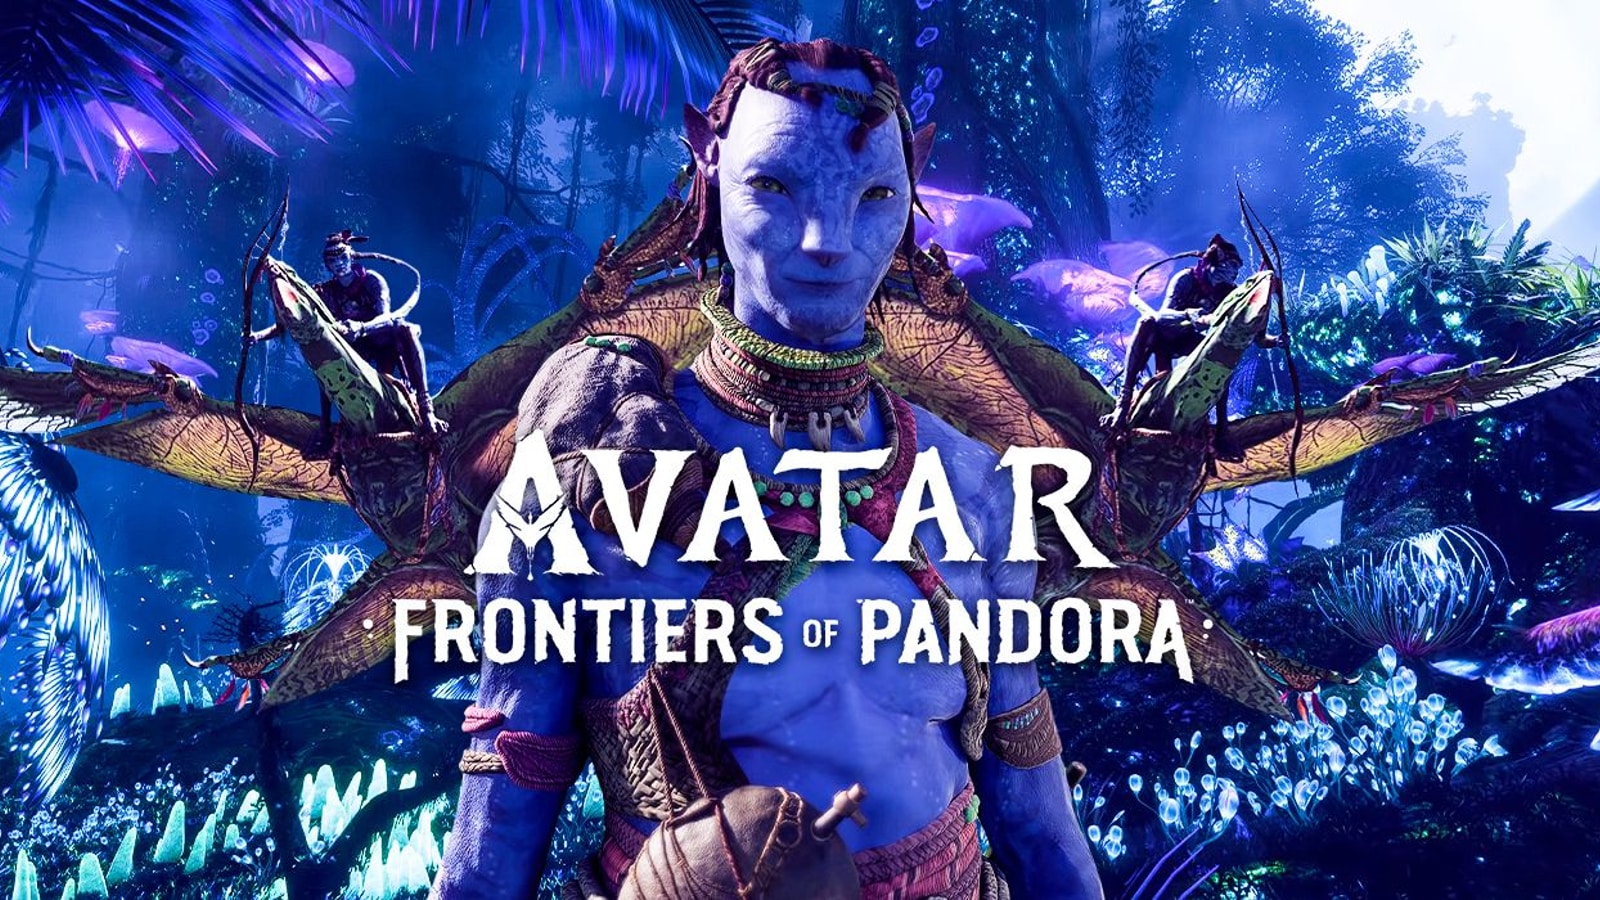 Thông tin mới nhất từ Avatar Frontiers of Pandora game sẽ khiến bạn phấn khích. Với đồ họa sống động và cốt truyện hấp dẫn, trò chơi sẽ đưa bạn vào những vùng đất mới và tuyệt vời nhất mà bạn từng biết đến. Hãy sẵn sàng cho một cuộc phiêu lưu đầy bất ngờ và thú vị.